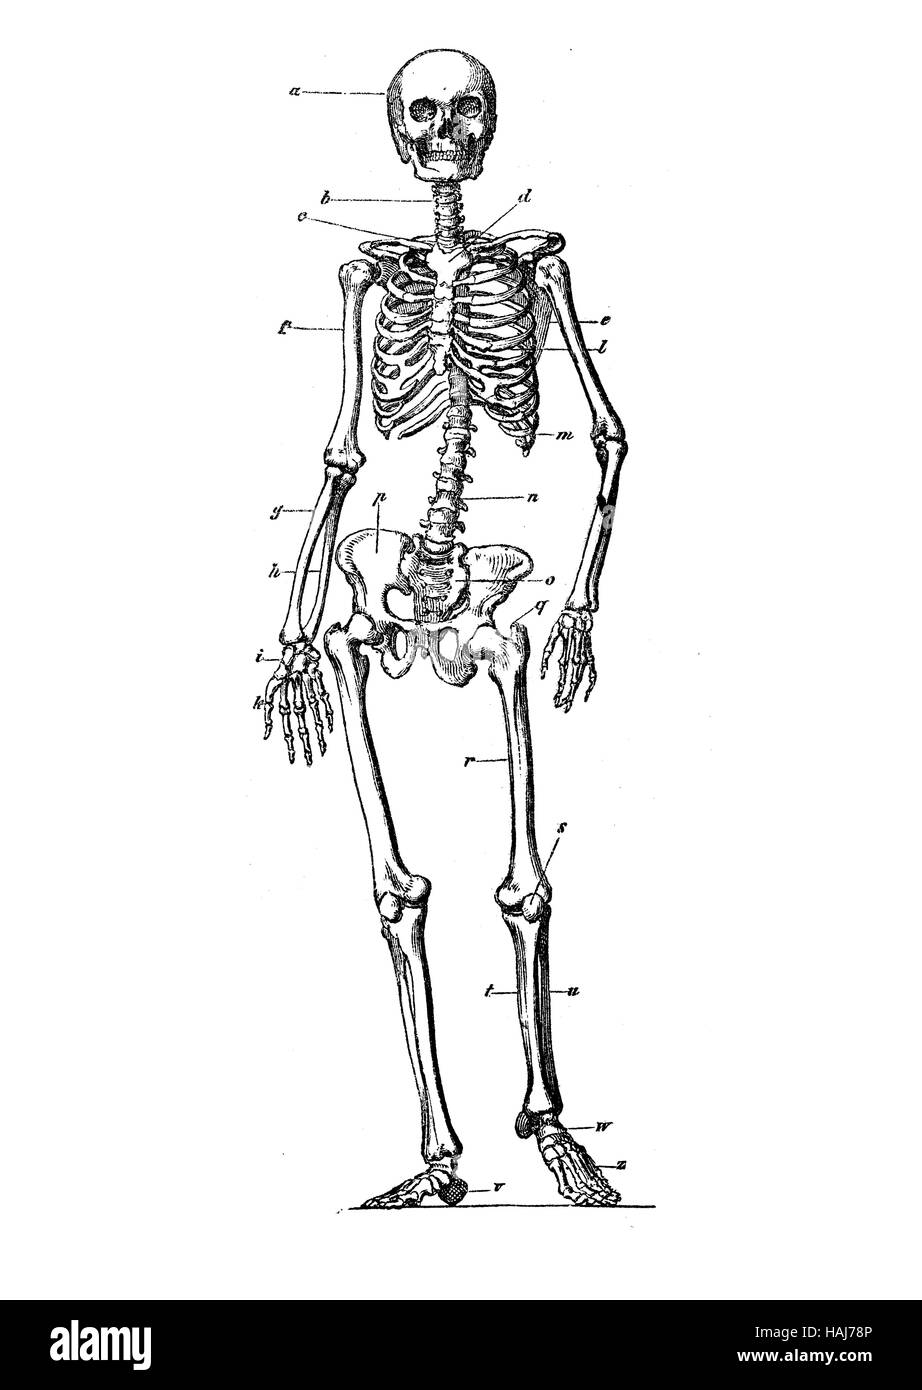 Squelette humain anatomie permanent, gravure XIX siècle Banque D'Images